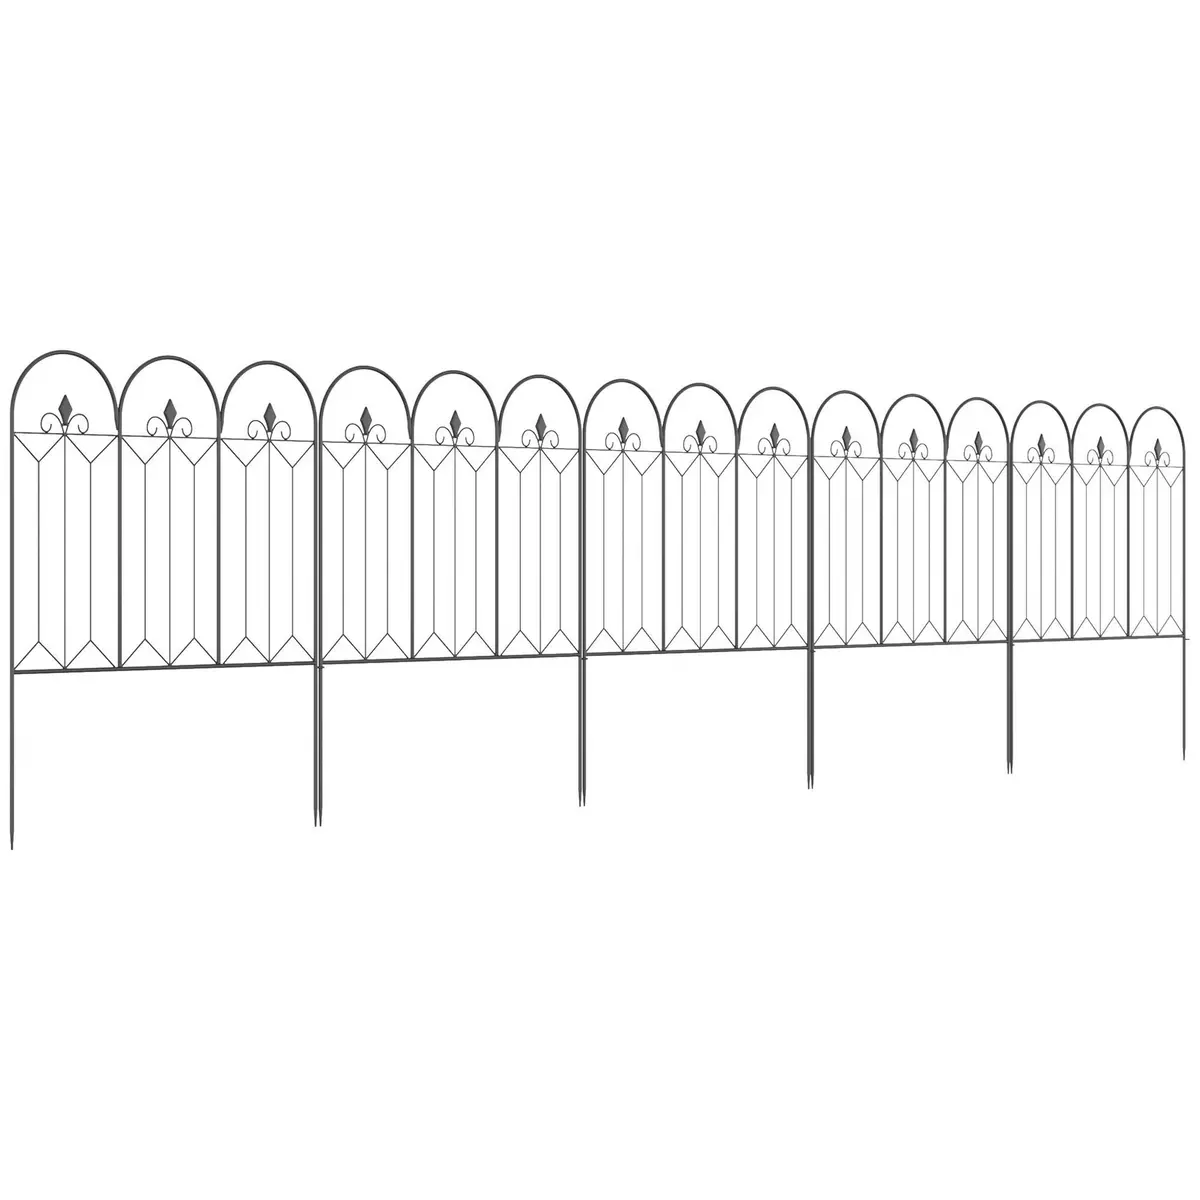 OUTSUNNY Lot de 5 clôtures de jardin décoratives en métal avec ornements - dim. totales 305L x 79,5H cm - noir